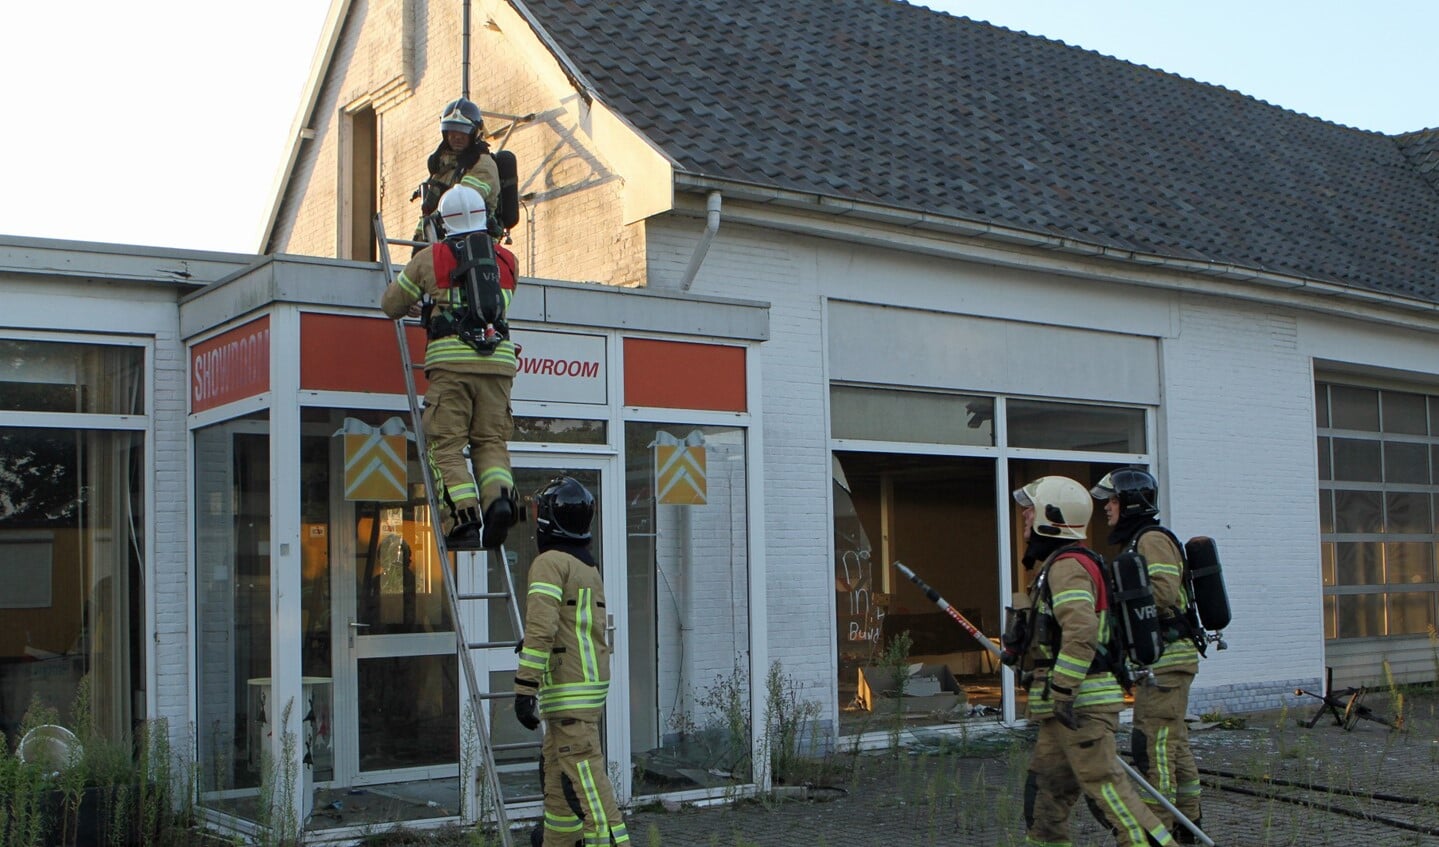 De brandweer kon snel het sein brand meester geven. Foto: Wil van Balen.